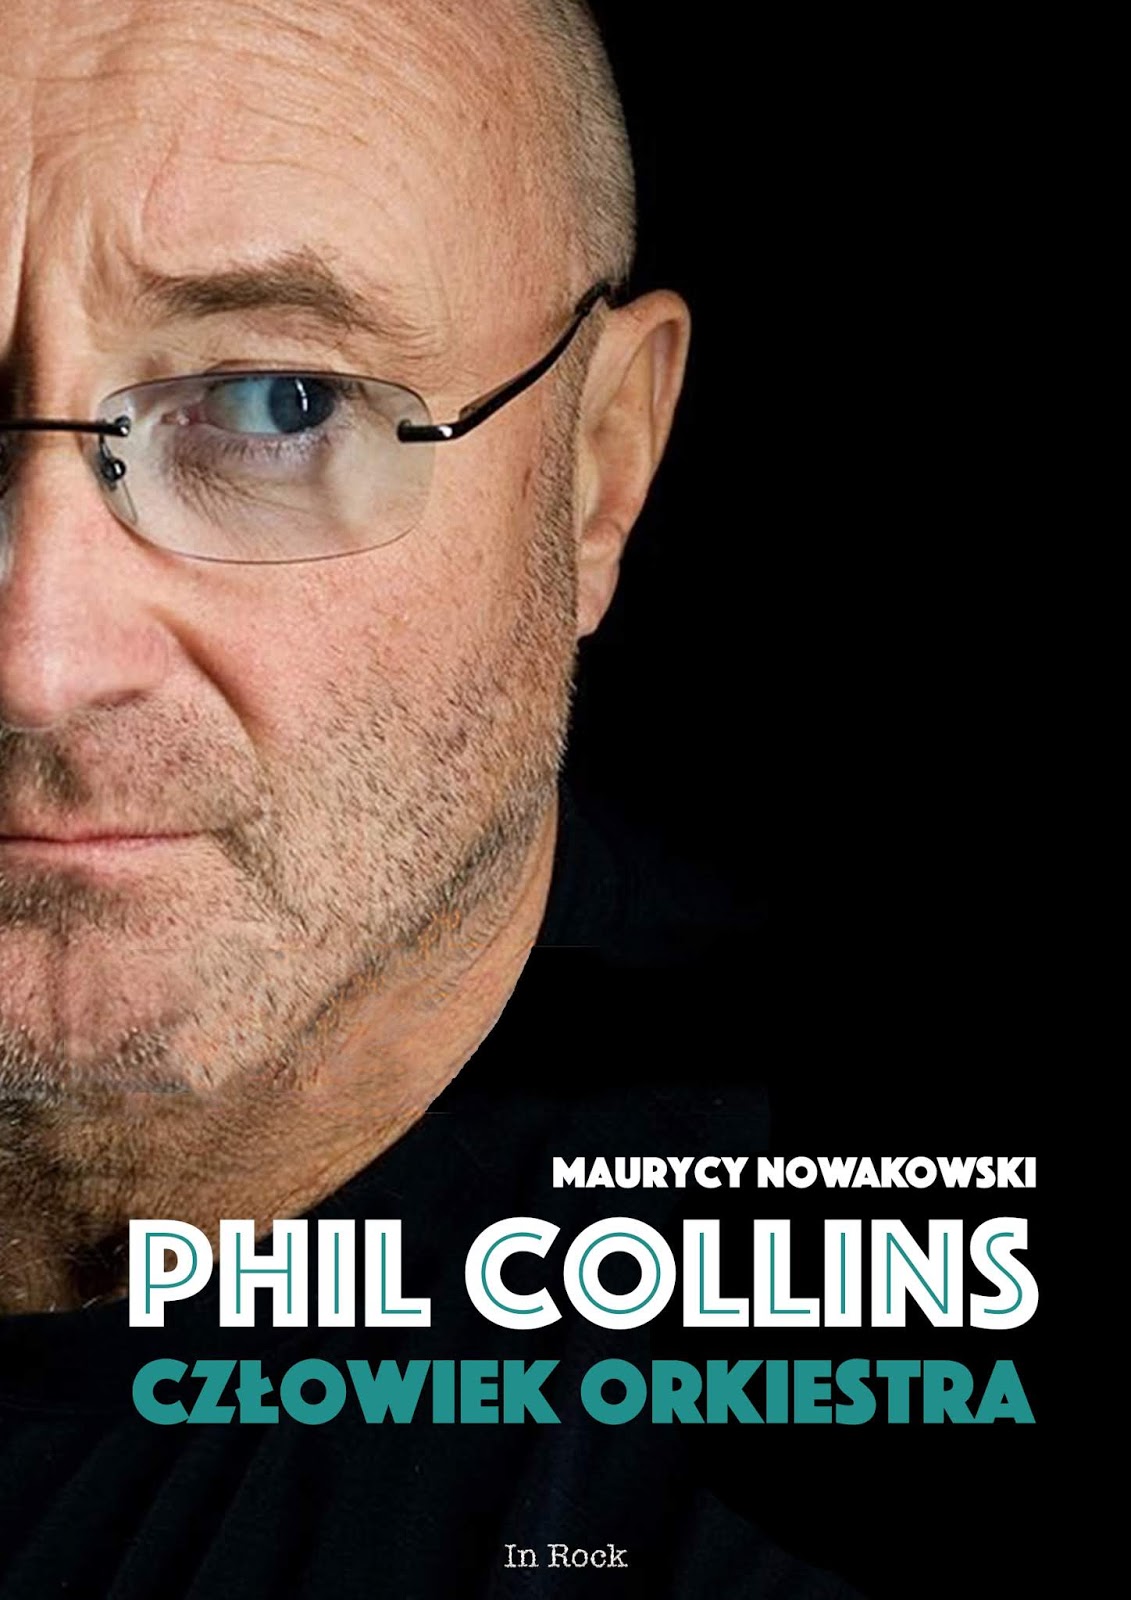 Phil Collins - kompletna biografia